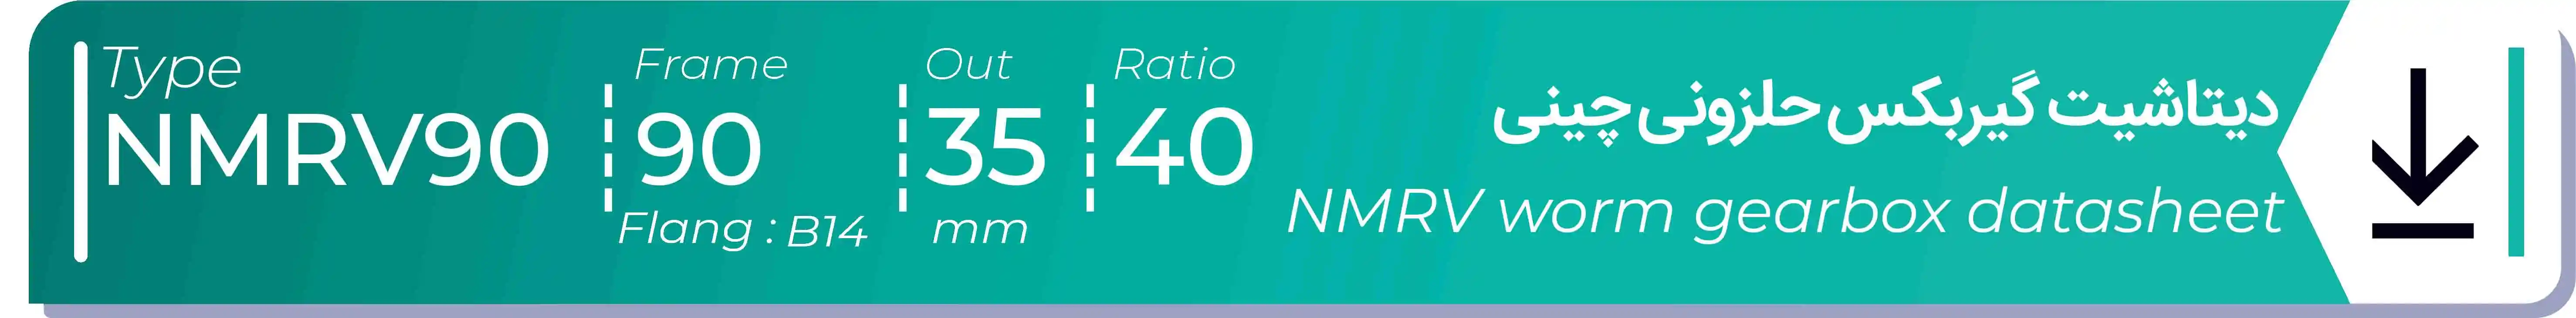  دیتاشیت و مشخصات فنی گیربکس حلزونی چینی   NMRV90  -  با خروجی 35- میلی متر و نسبت40 و فریم 90